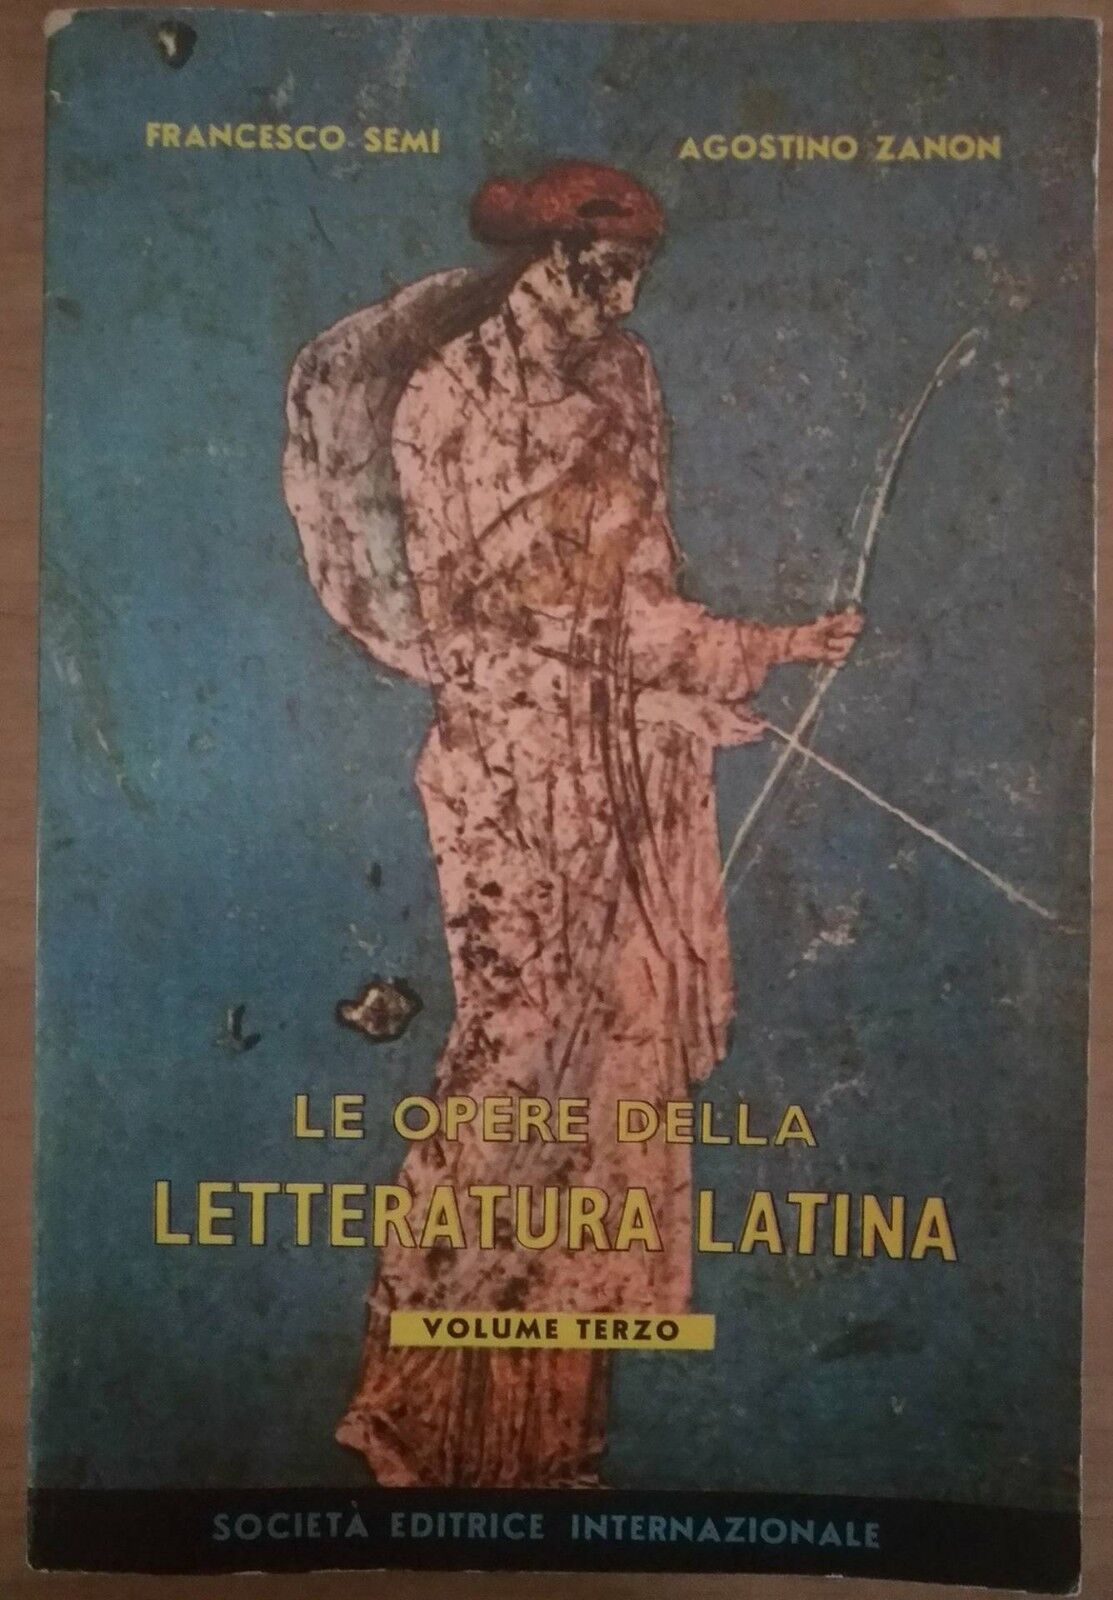 Le opere della letteratura latina vol 3 - F.Semi, A.Zanon, 1958, SEI - S